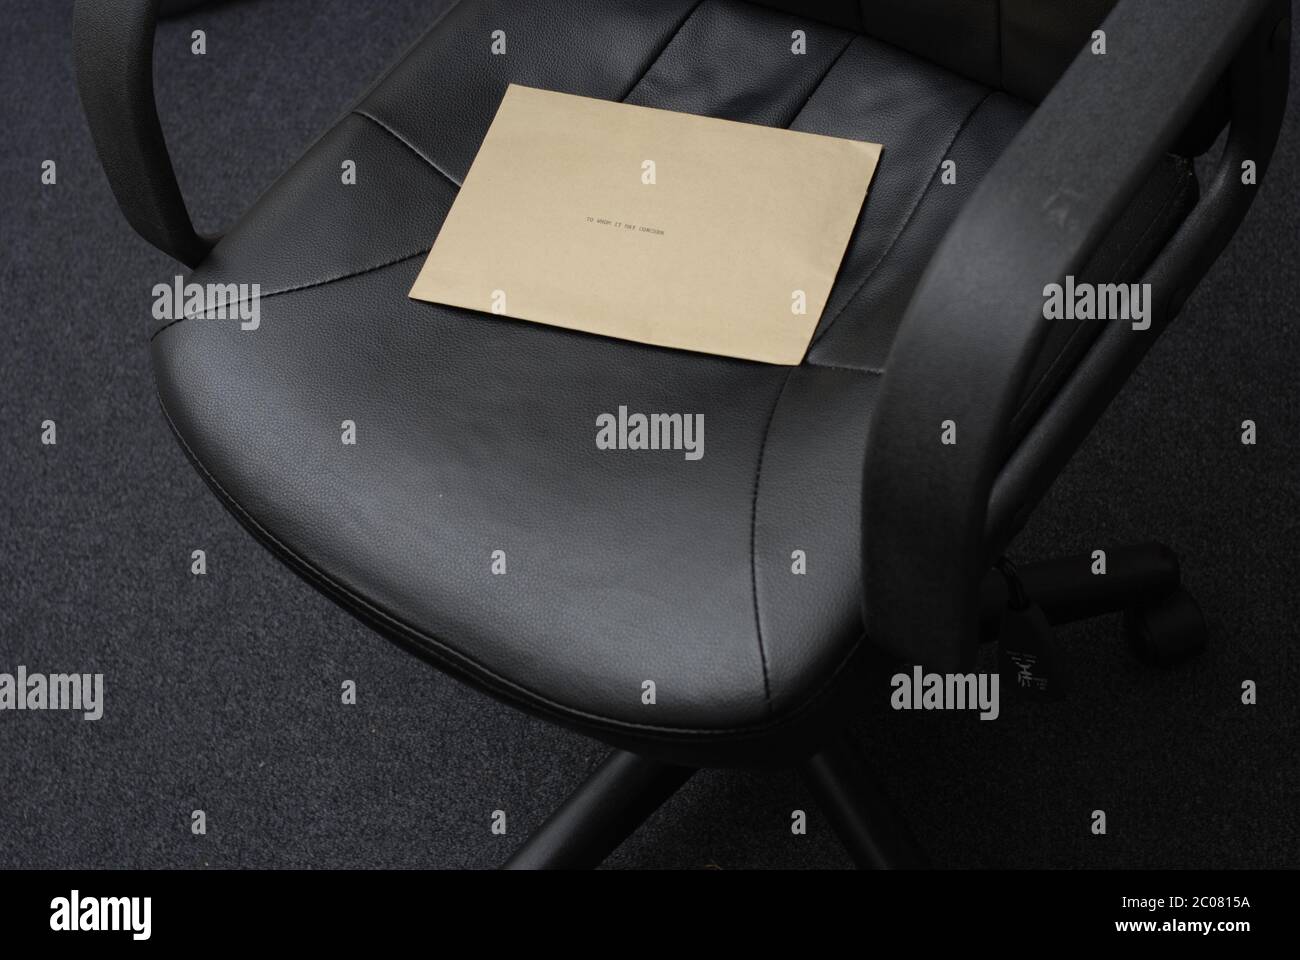 An wen es sich möglicherweise handelt. Geheimnisvolle Nachricht auf einem Bürostuhl hinterlassen. Brauner Manilla Umschlag auf Sitz hat die Wörter, an wen es möglicherweise betreffen, die auf ihm geschrieben werden. Stockfoto